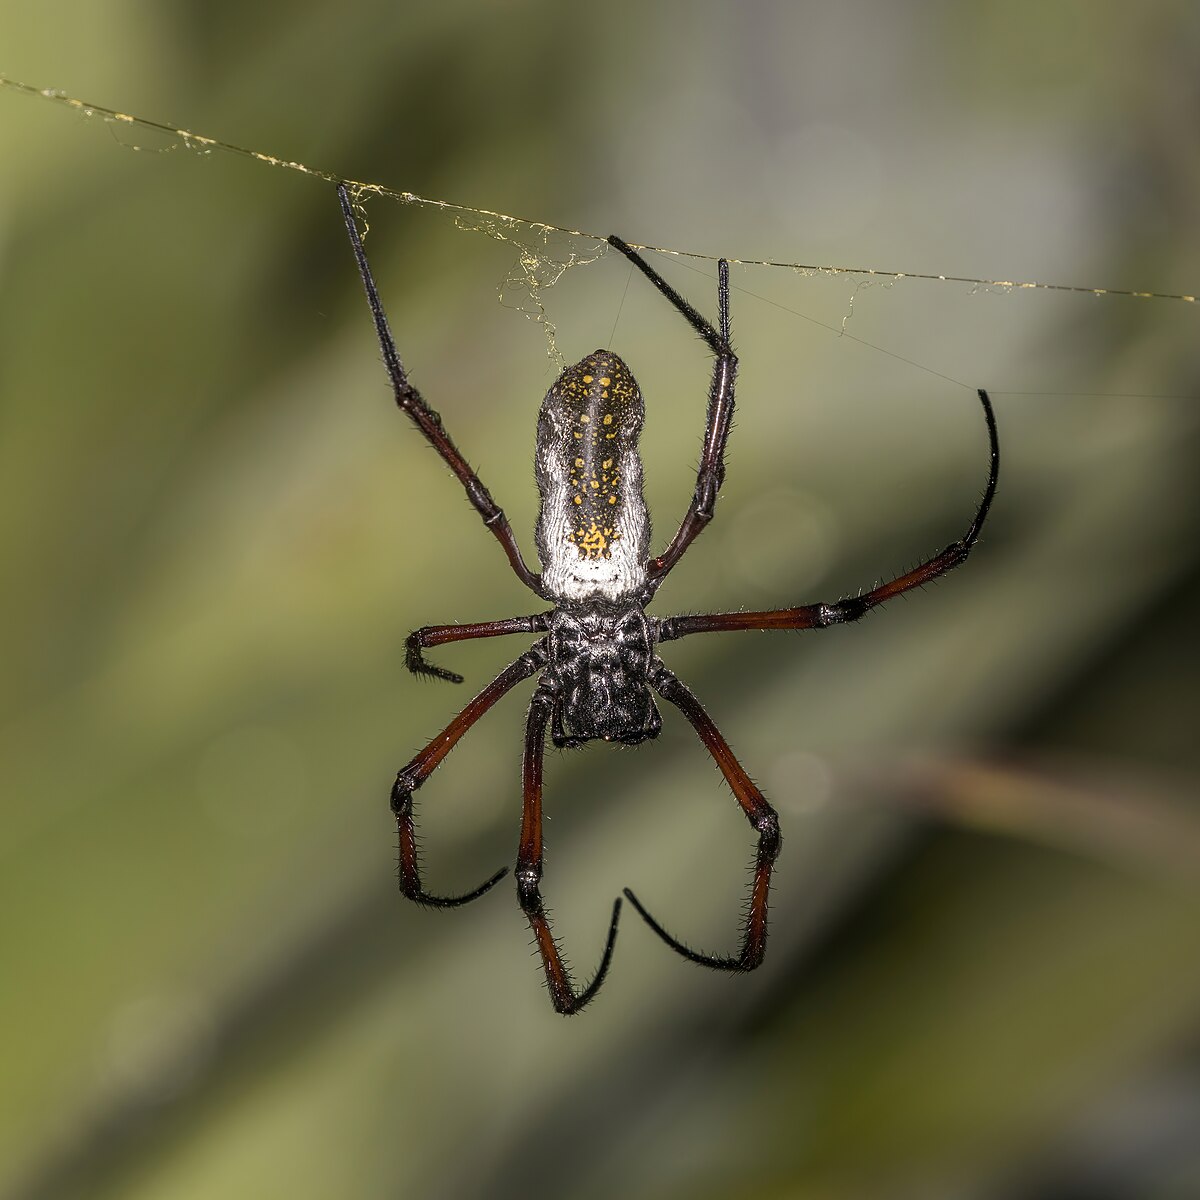 Spider silk - Wikipedia